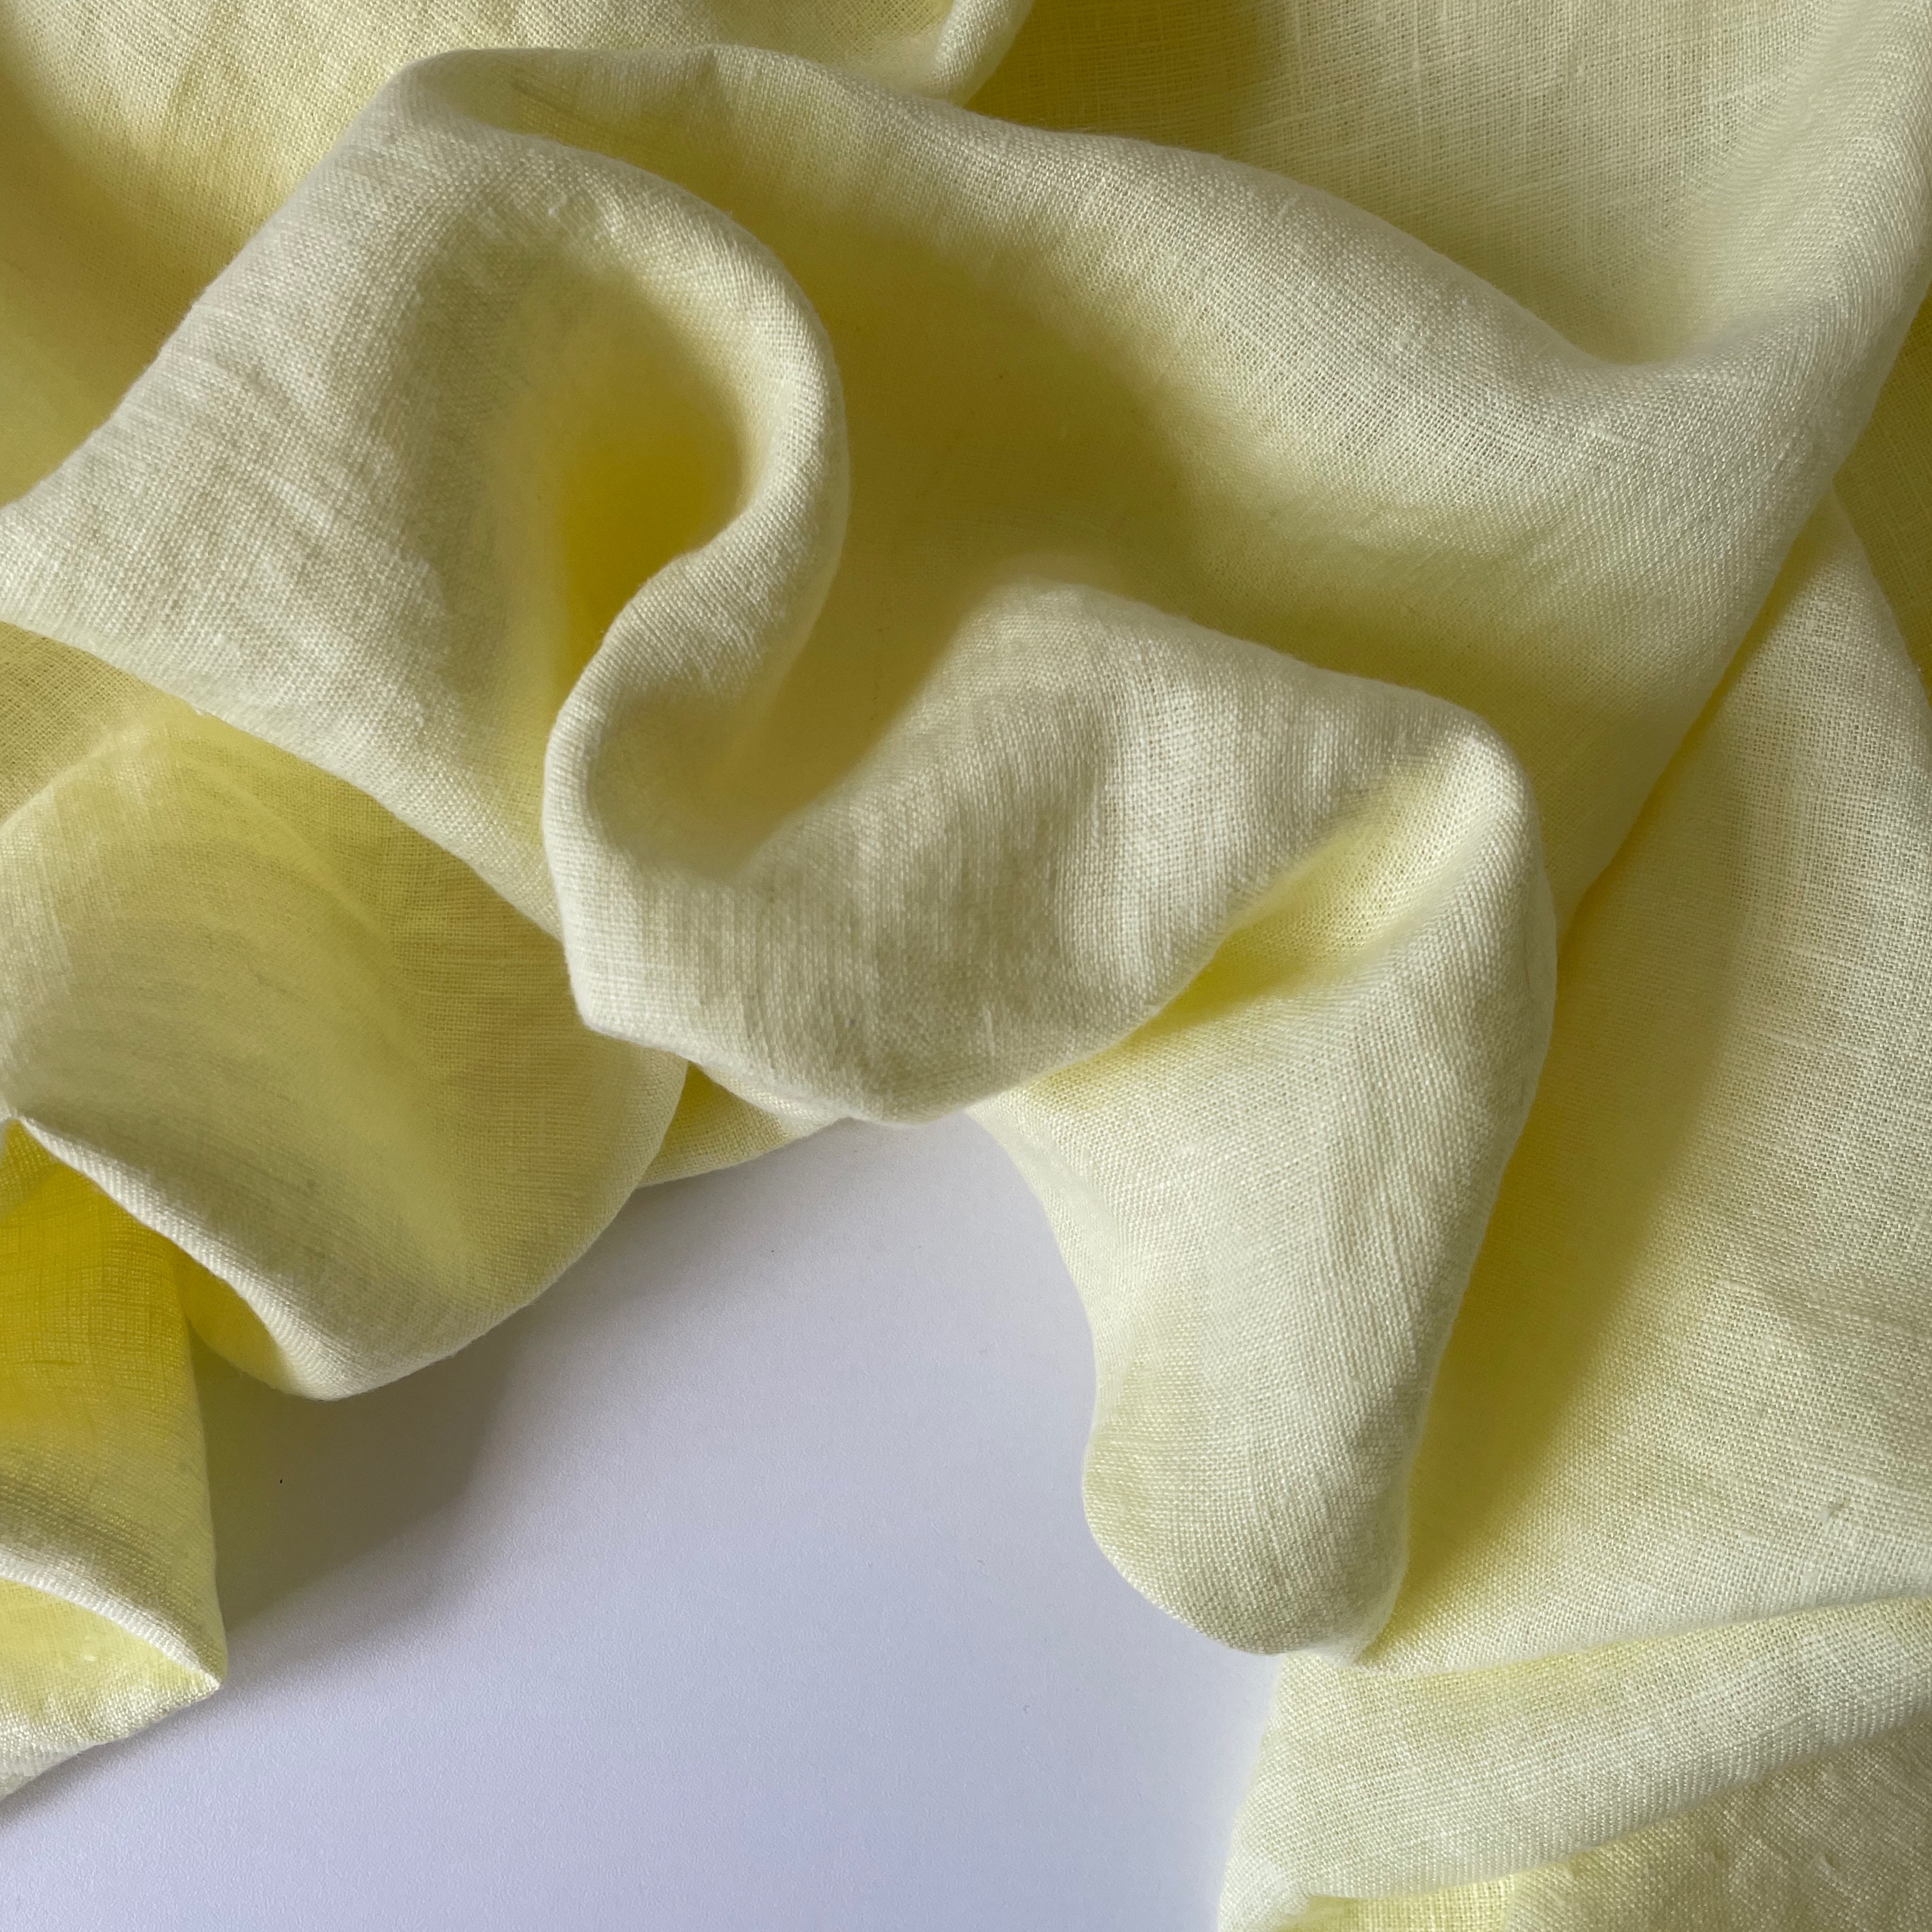 Ткань лен умягченный MamiMa fabric 04360 лимонный зефир, отрез 100x140 см